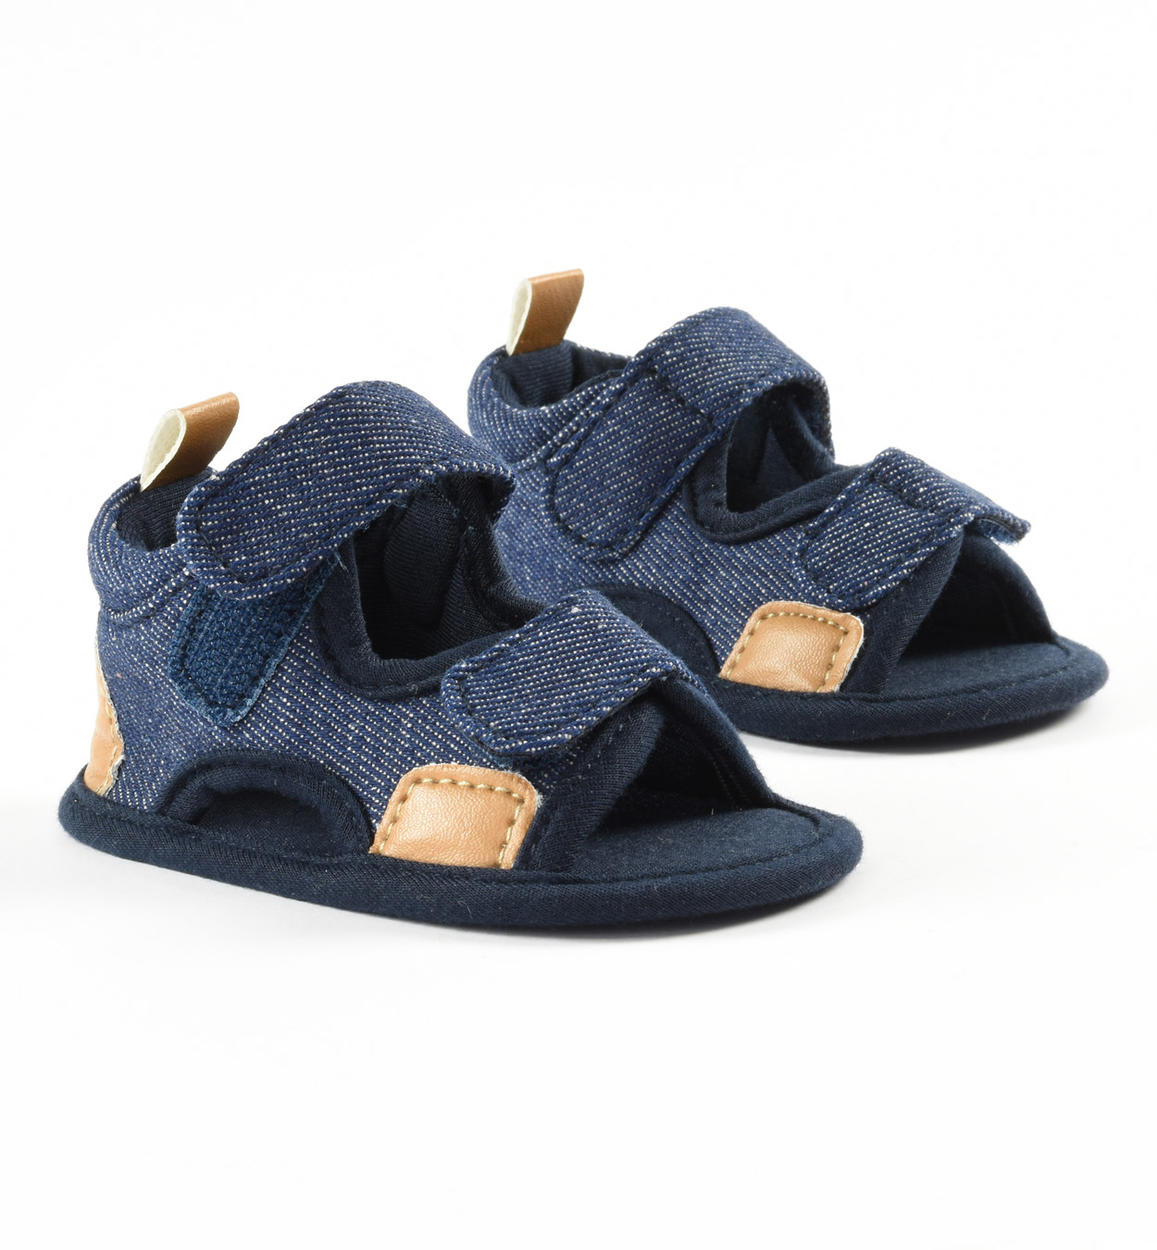 Freschi sandali in 100% cotone per neonato da 0 a 18 mesi iDO - iDO - iDO